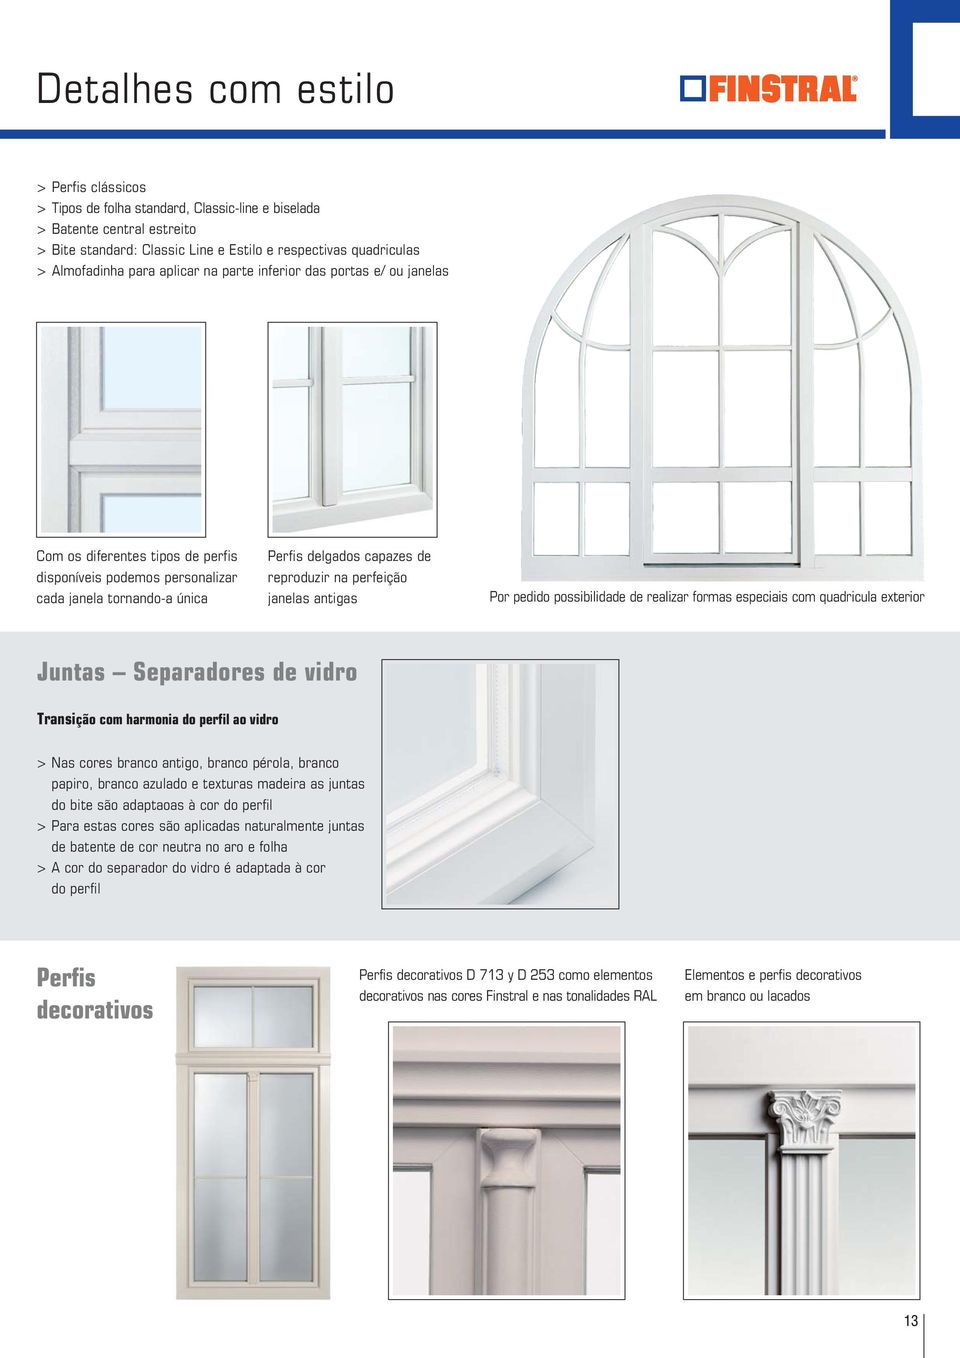 perfeição janelas antigas Por pedido possibilidade de realizar formas especiais com quadricula exterior Juntas Separadores de vidro Transição com harmonia do perfil ao vidro > Nas cores branco